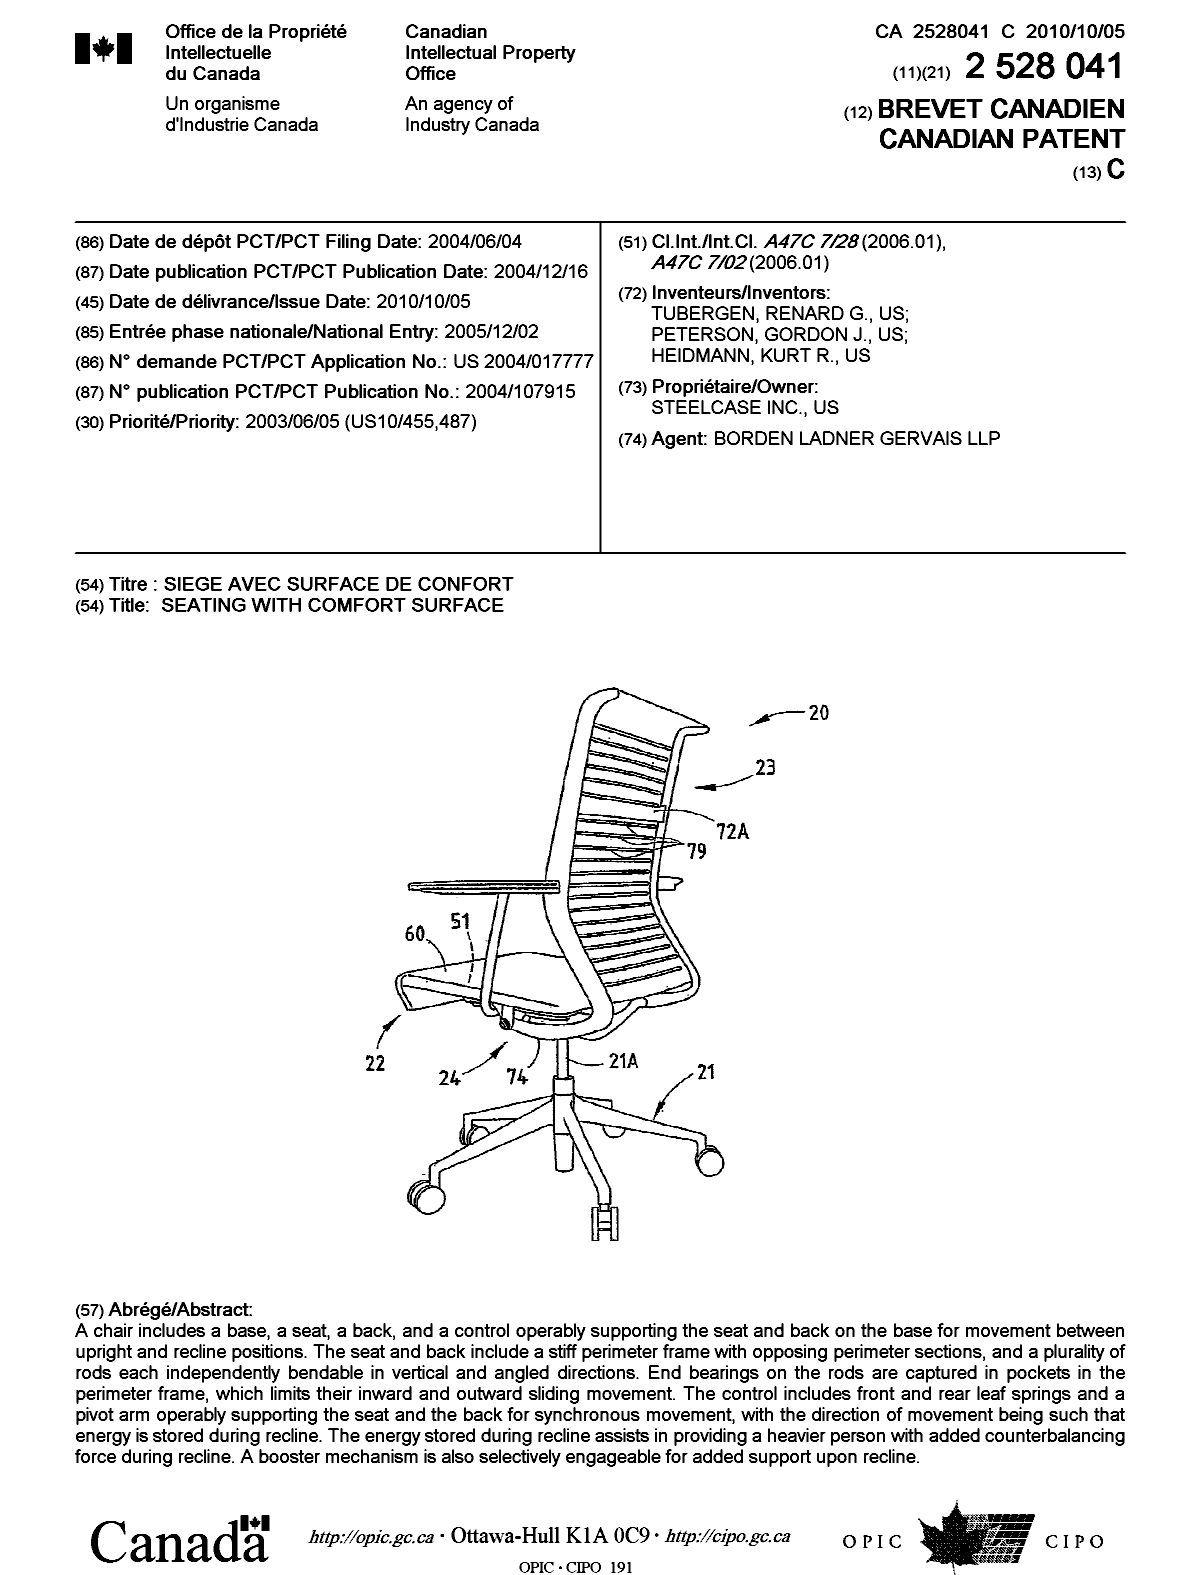 Document de brevet canadien 2528041. Page couverture 20100909. Image 1 de 1